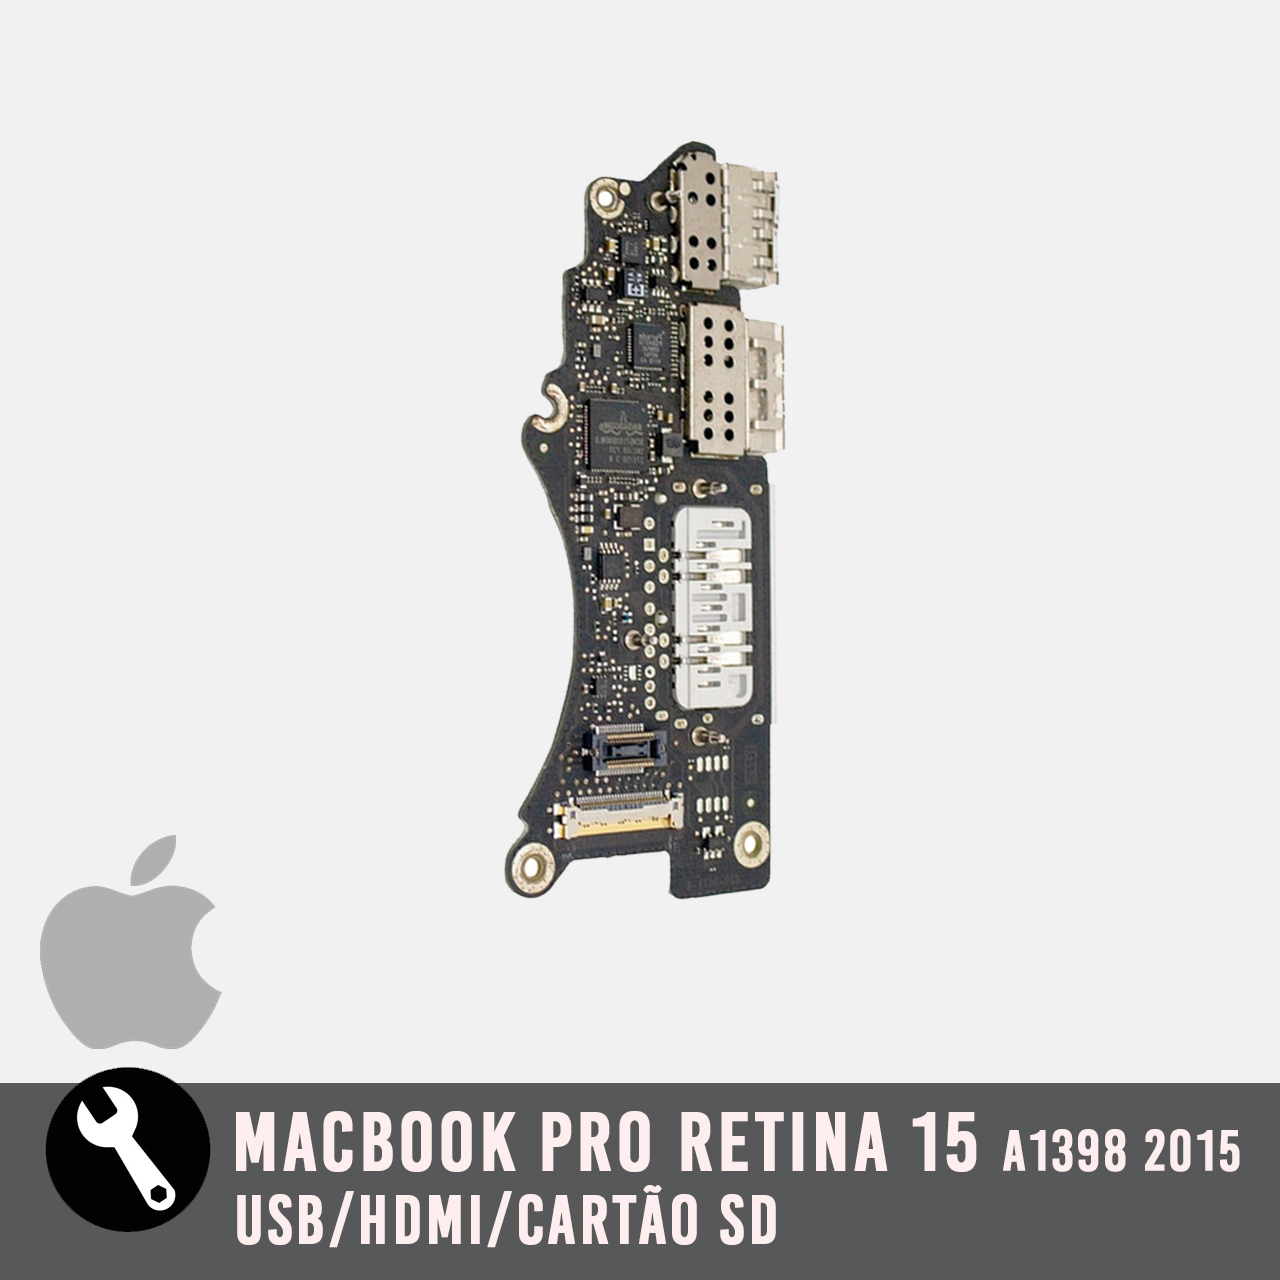 Placa USB / HDMI / Cartão SD para Macbook Pro Retina 15 2015 A1398